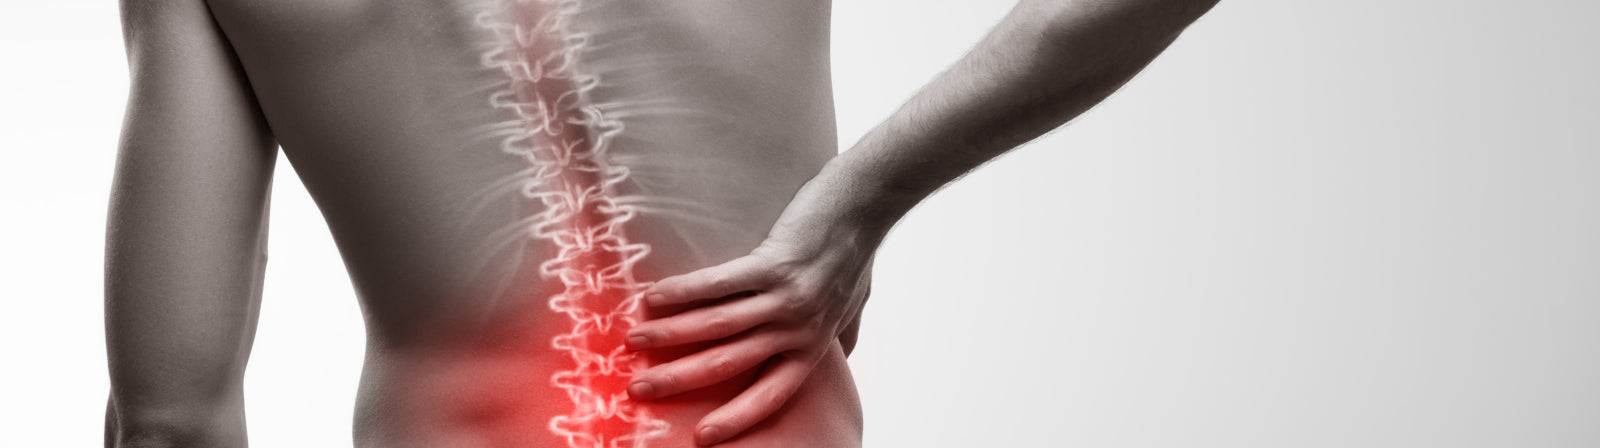 Welche Matratze passt am besten zu Rückenschmerzen?